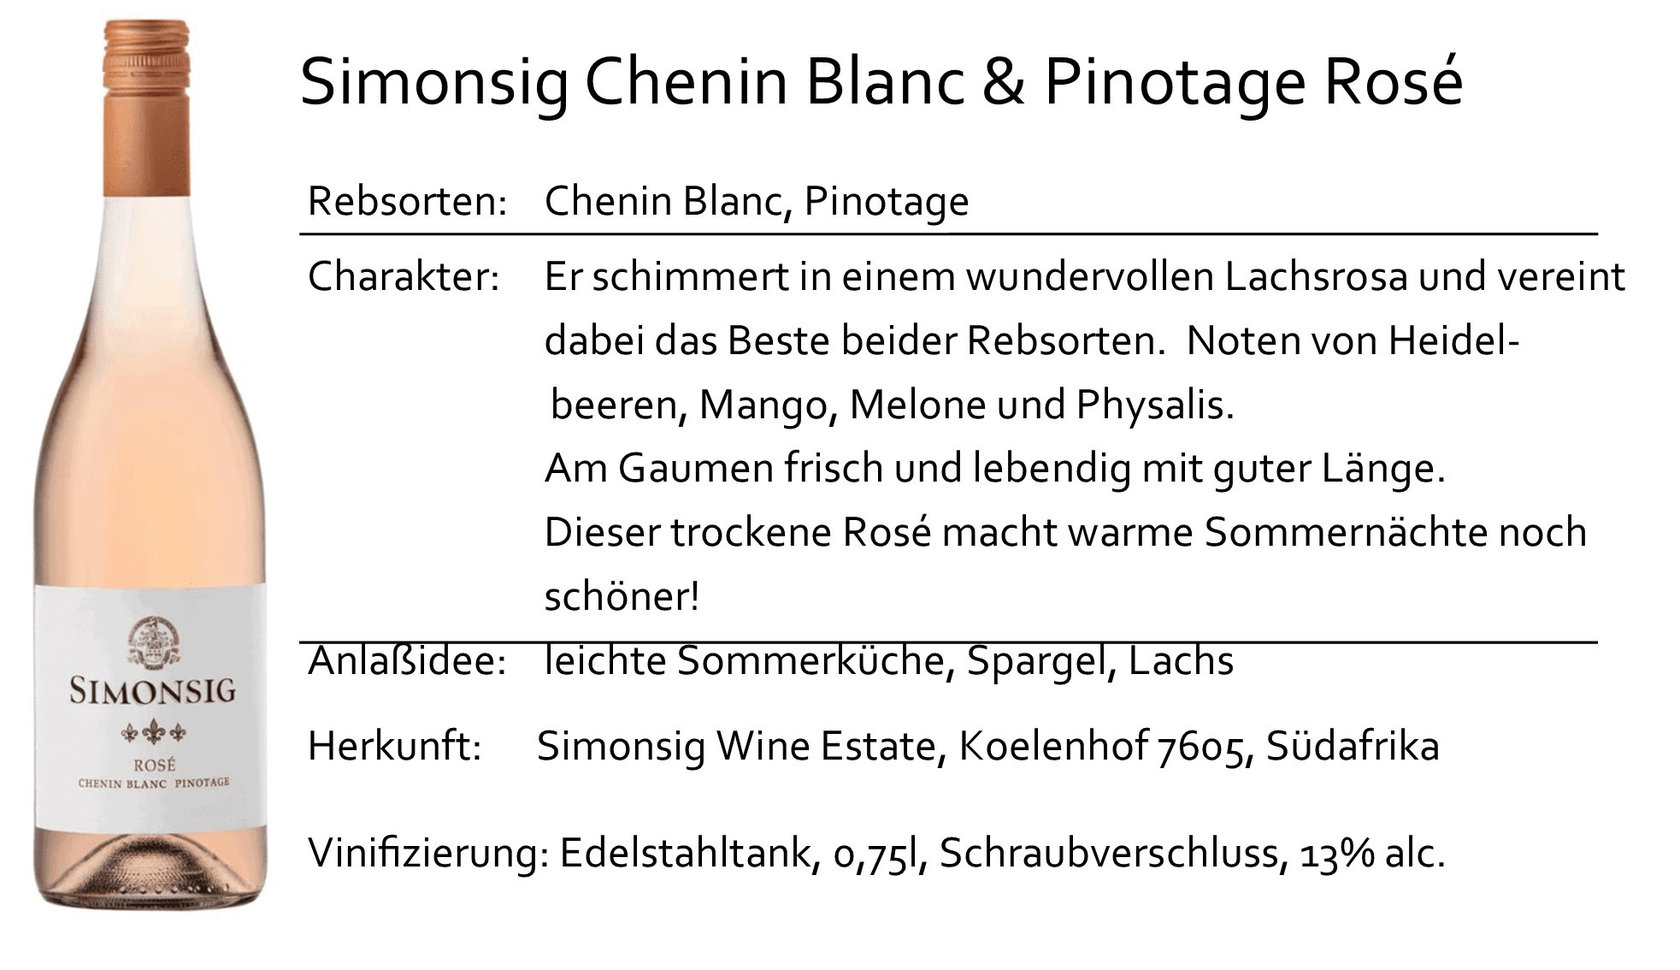 Simonsig Chenin Blanc & Pinotage Rosé 2020